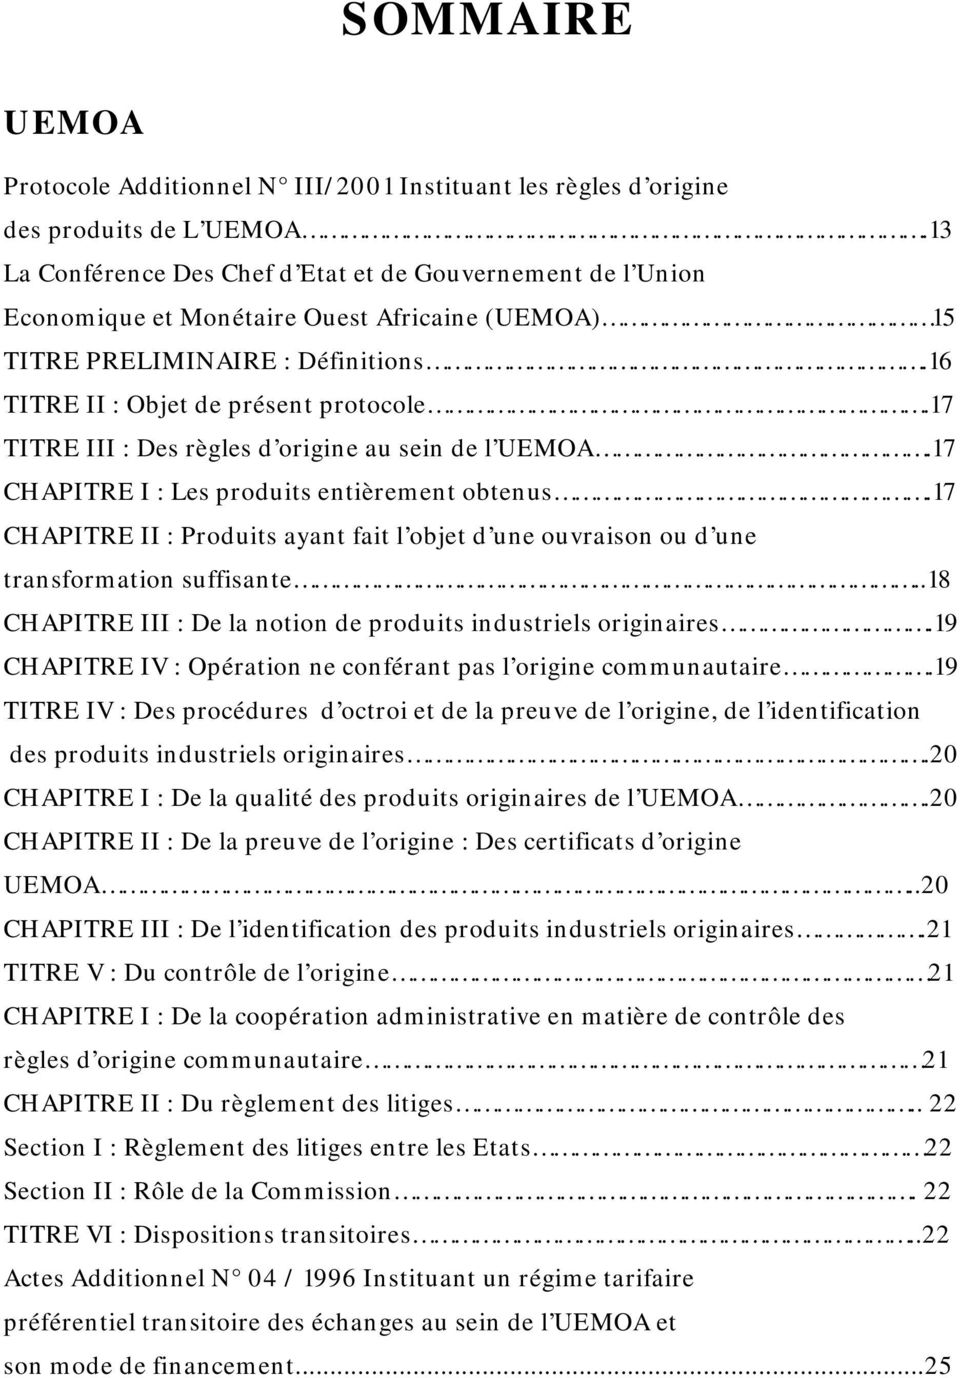 17 TITRE III : Des règles d origine au sein de l UEMOA.17 CHAPITRE I : Les produits entièrement obtenus.17 CHAPITRE II : Produits ayant fait l objet d une ouvraison ou d une transformation suffisante.